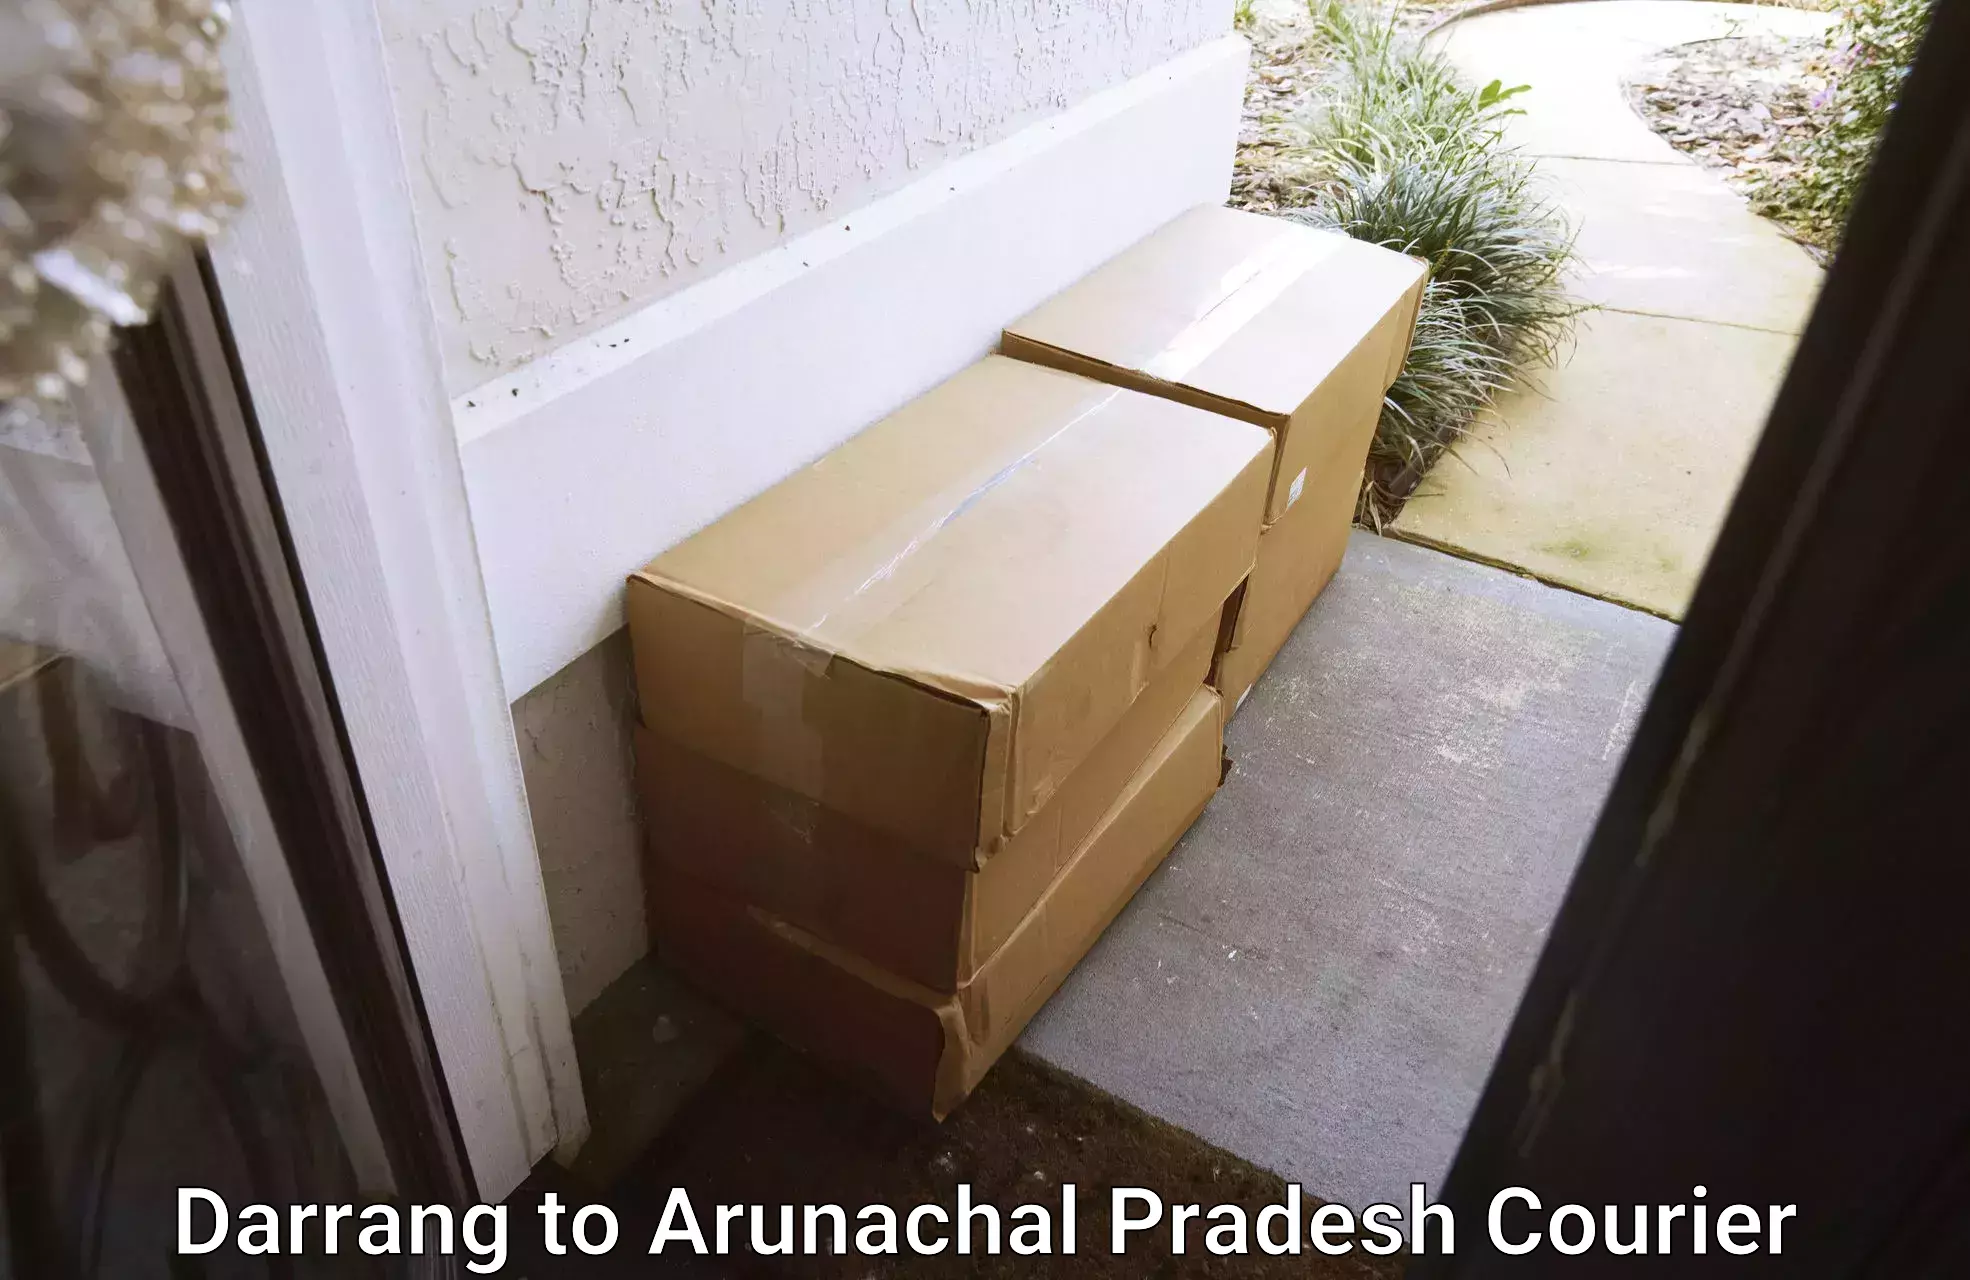 High-speed parcel service Darrang to Arunachal Pradesh